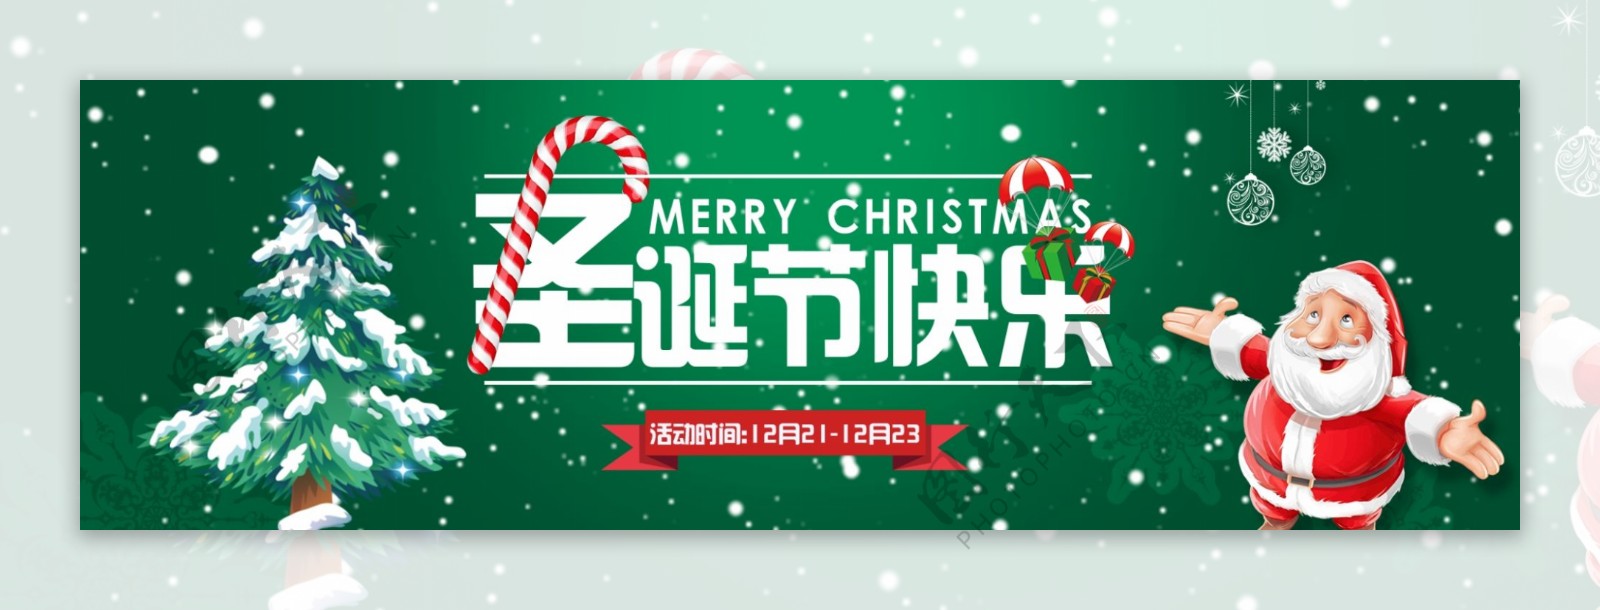 淘宝天猫圣诞节宽屏活动banner海报